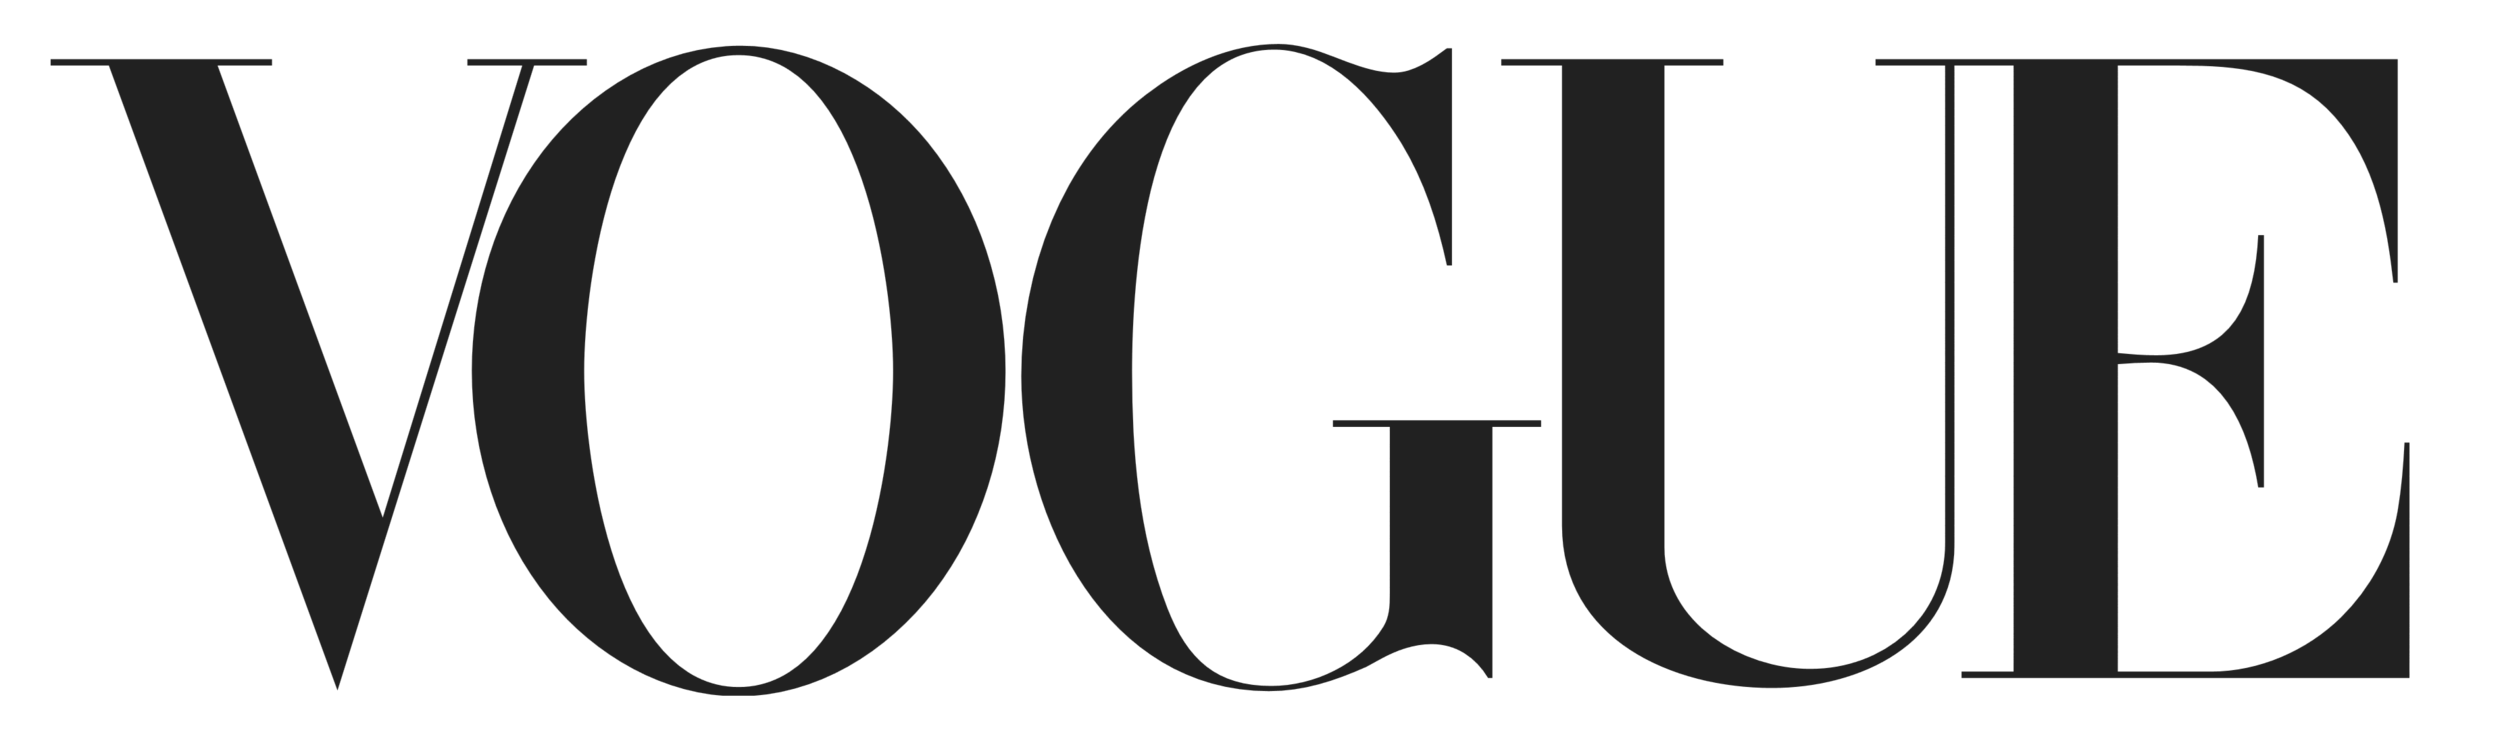 Vogue_logo.png